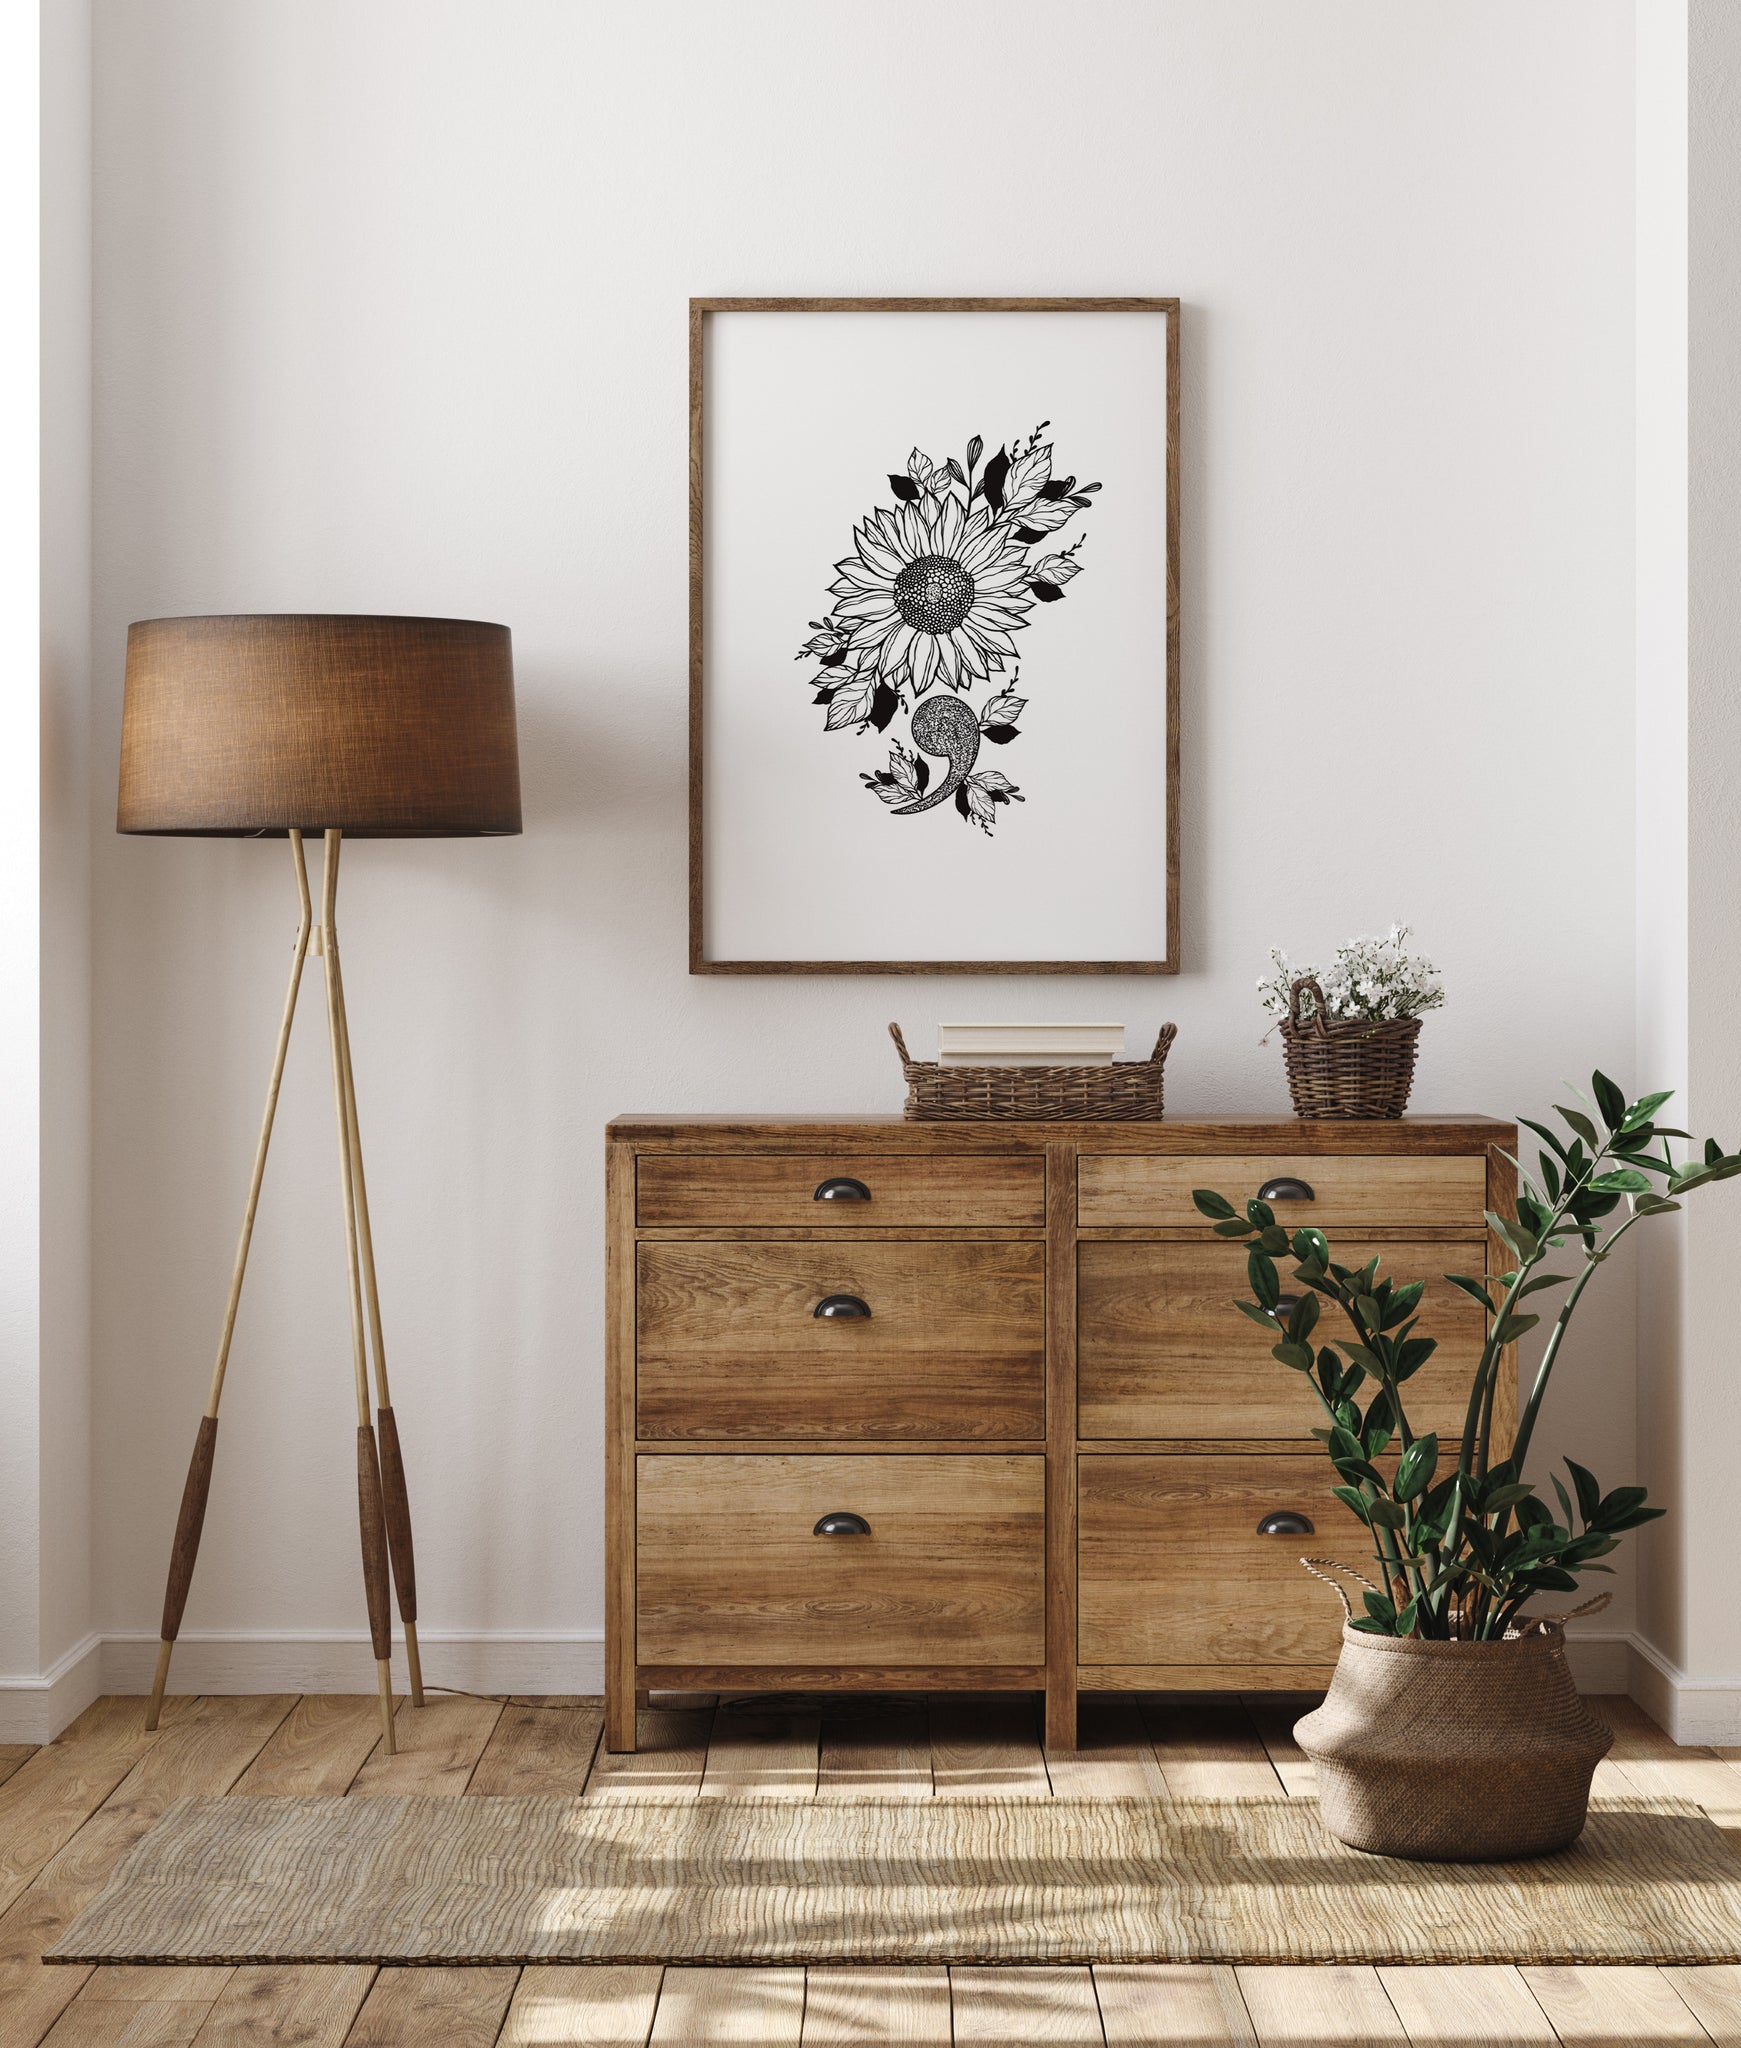 Sunflower Semicolon – JDuke Illustrations